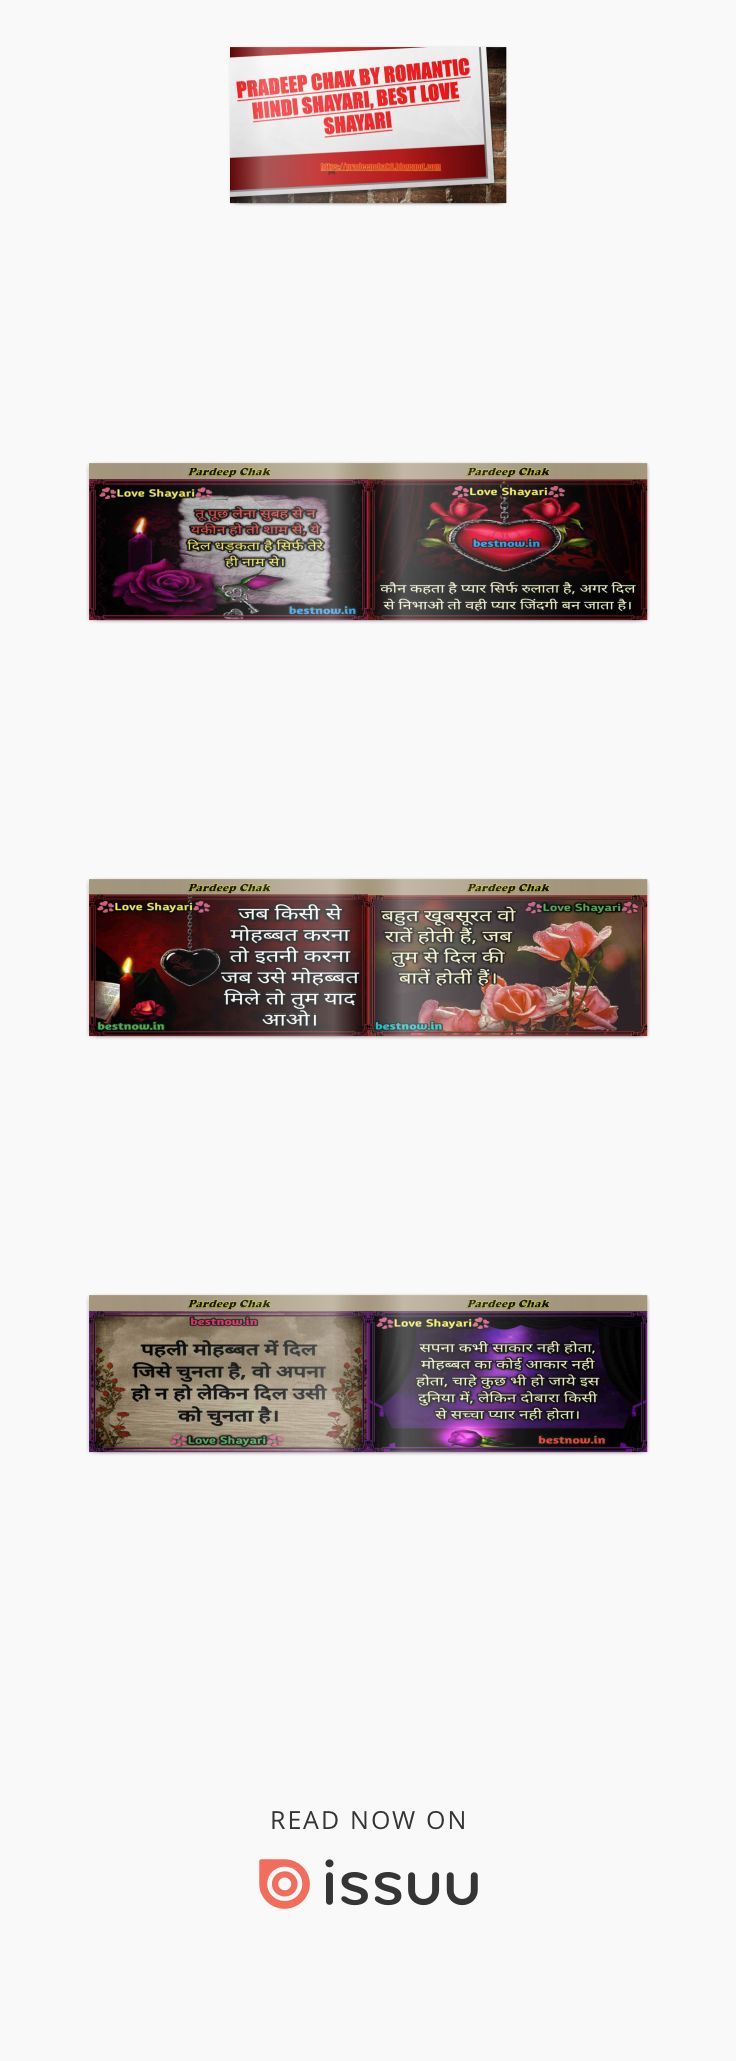 #Love Shayari In Hindi And Images By Pradeep Chak